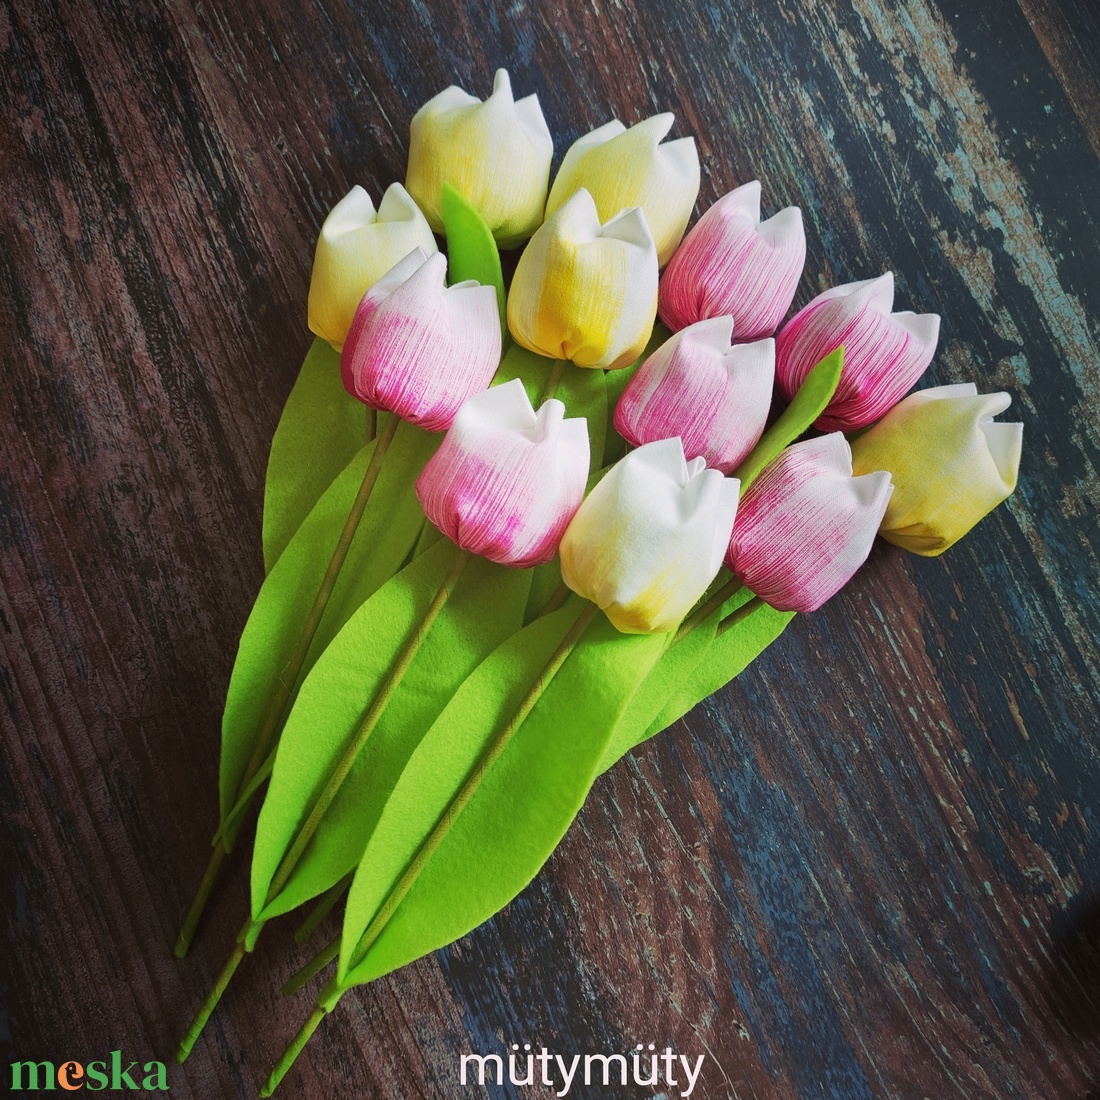 Festett textil tulipánok (12 szál/cs, fehér-sárga/pink) örökcsokor - otthon & lakás - dekoráció - virágdísz és tartó - csokor & virágdísz - Meska.hu